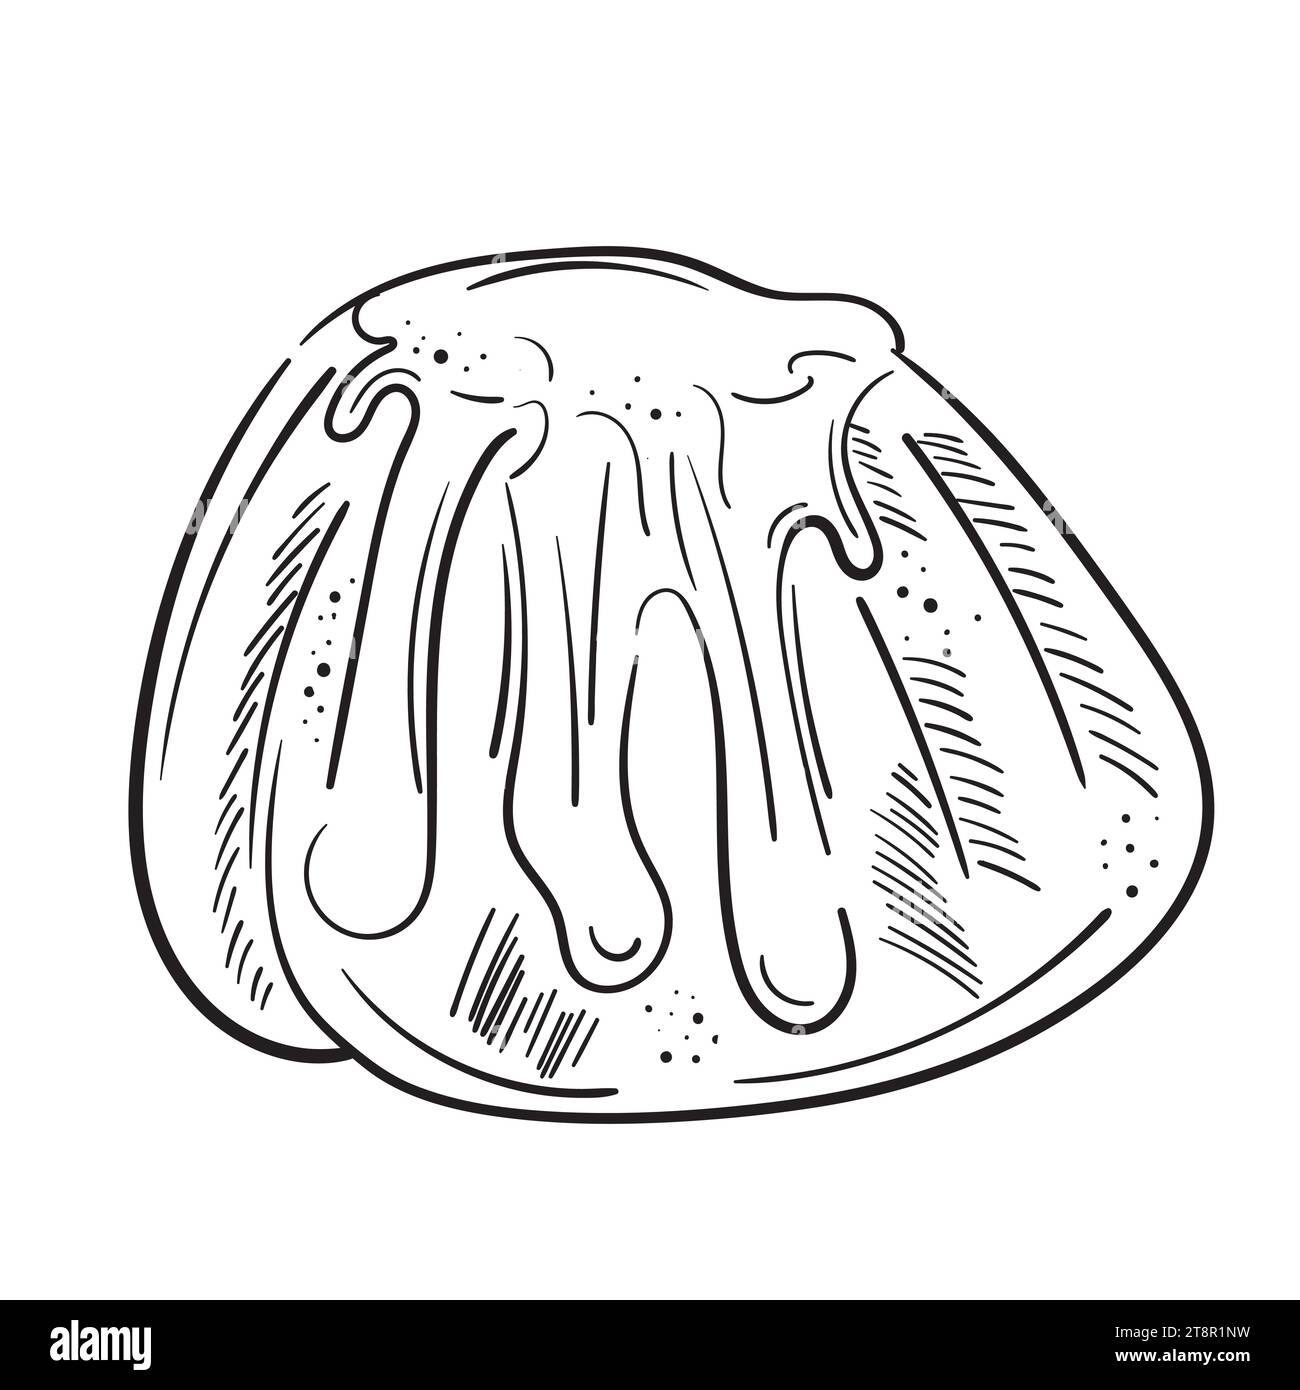 Disegnare l'illustrazione del doodle Rum Baba. Bundt cake con glassa di zucchero. Dolci dolci disegnati a mano isolati su uno sfondo bianco. Per i menu, volantini Illustrazione Vettoriale